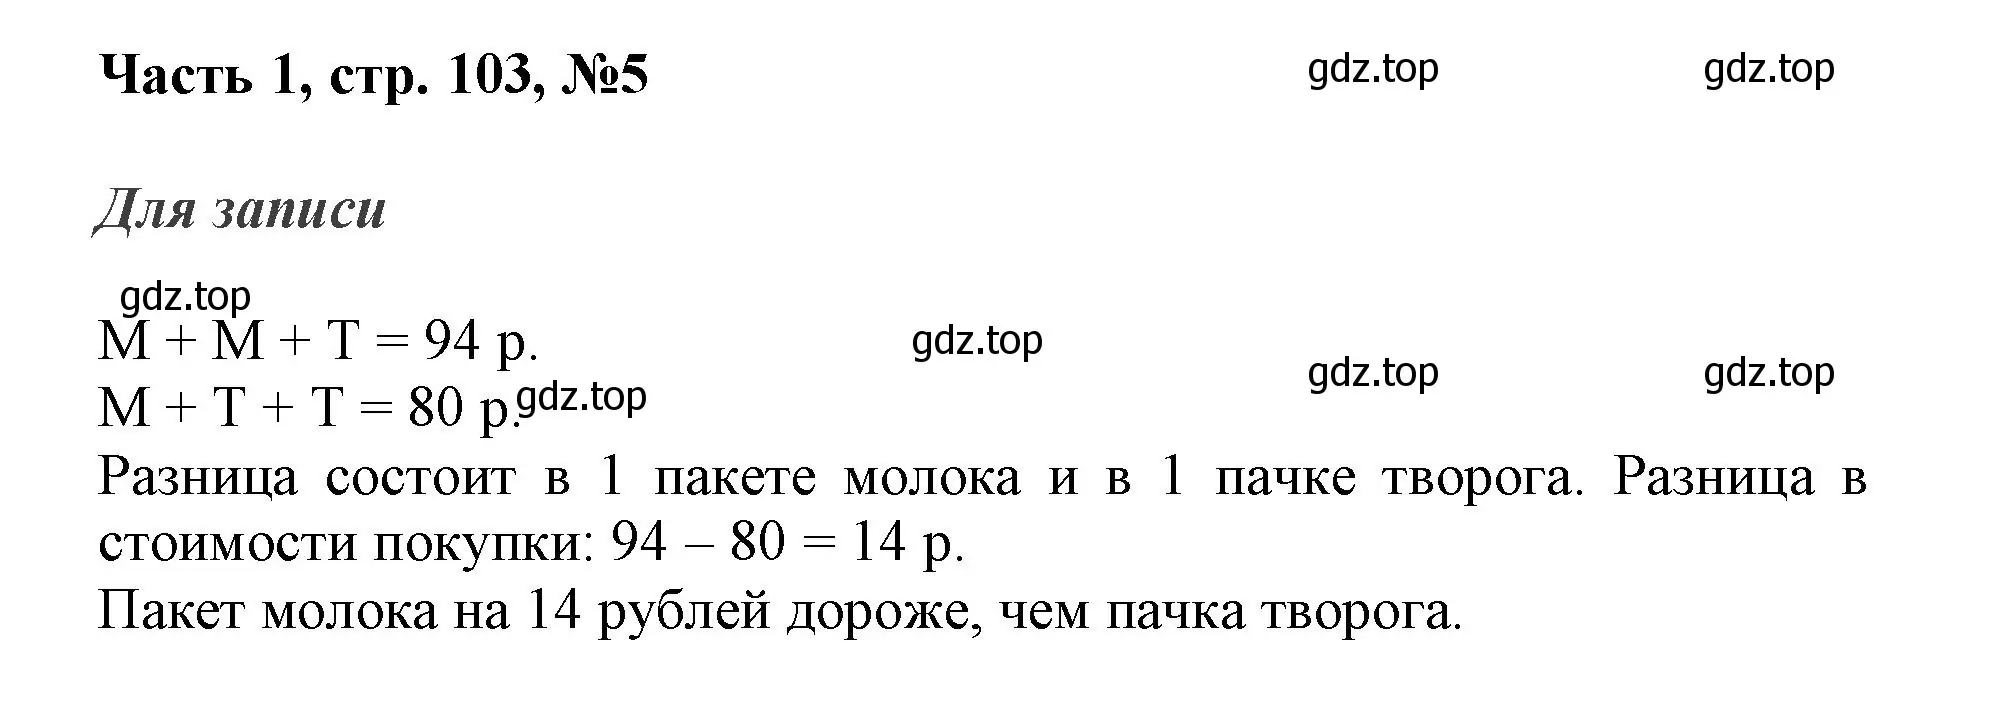 Решение номер 5 (страница 103) гдз по математике 3 класс Моро, Бантова, учебник 1 часть